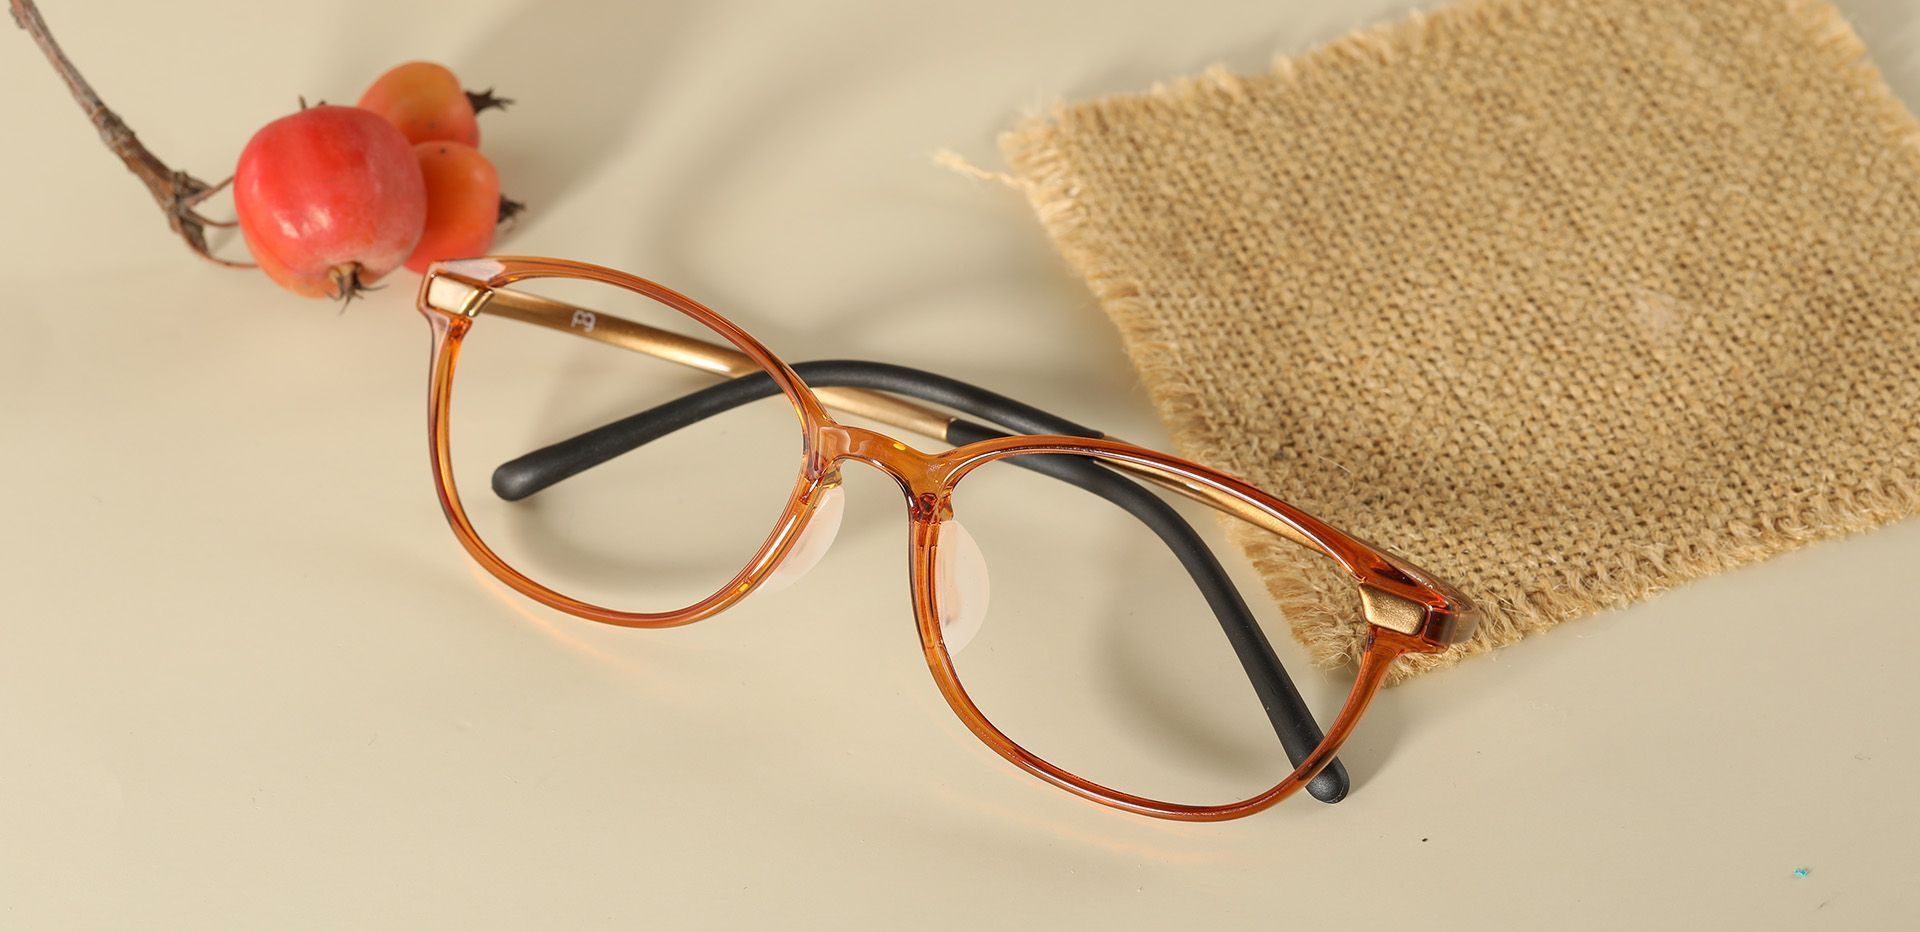 Garner Oval Prescription Glasses - Brown